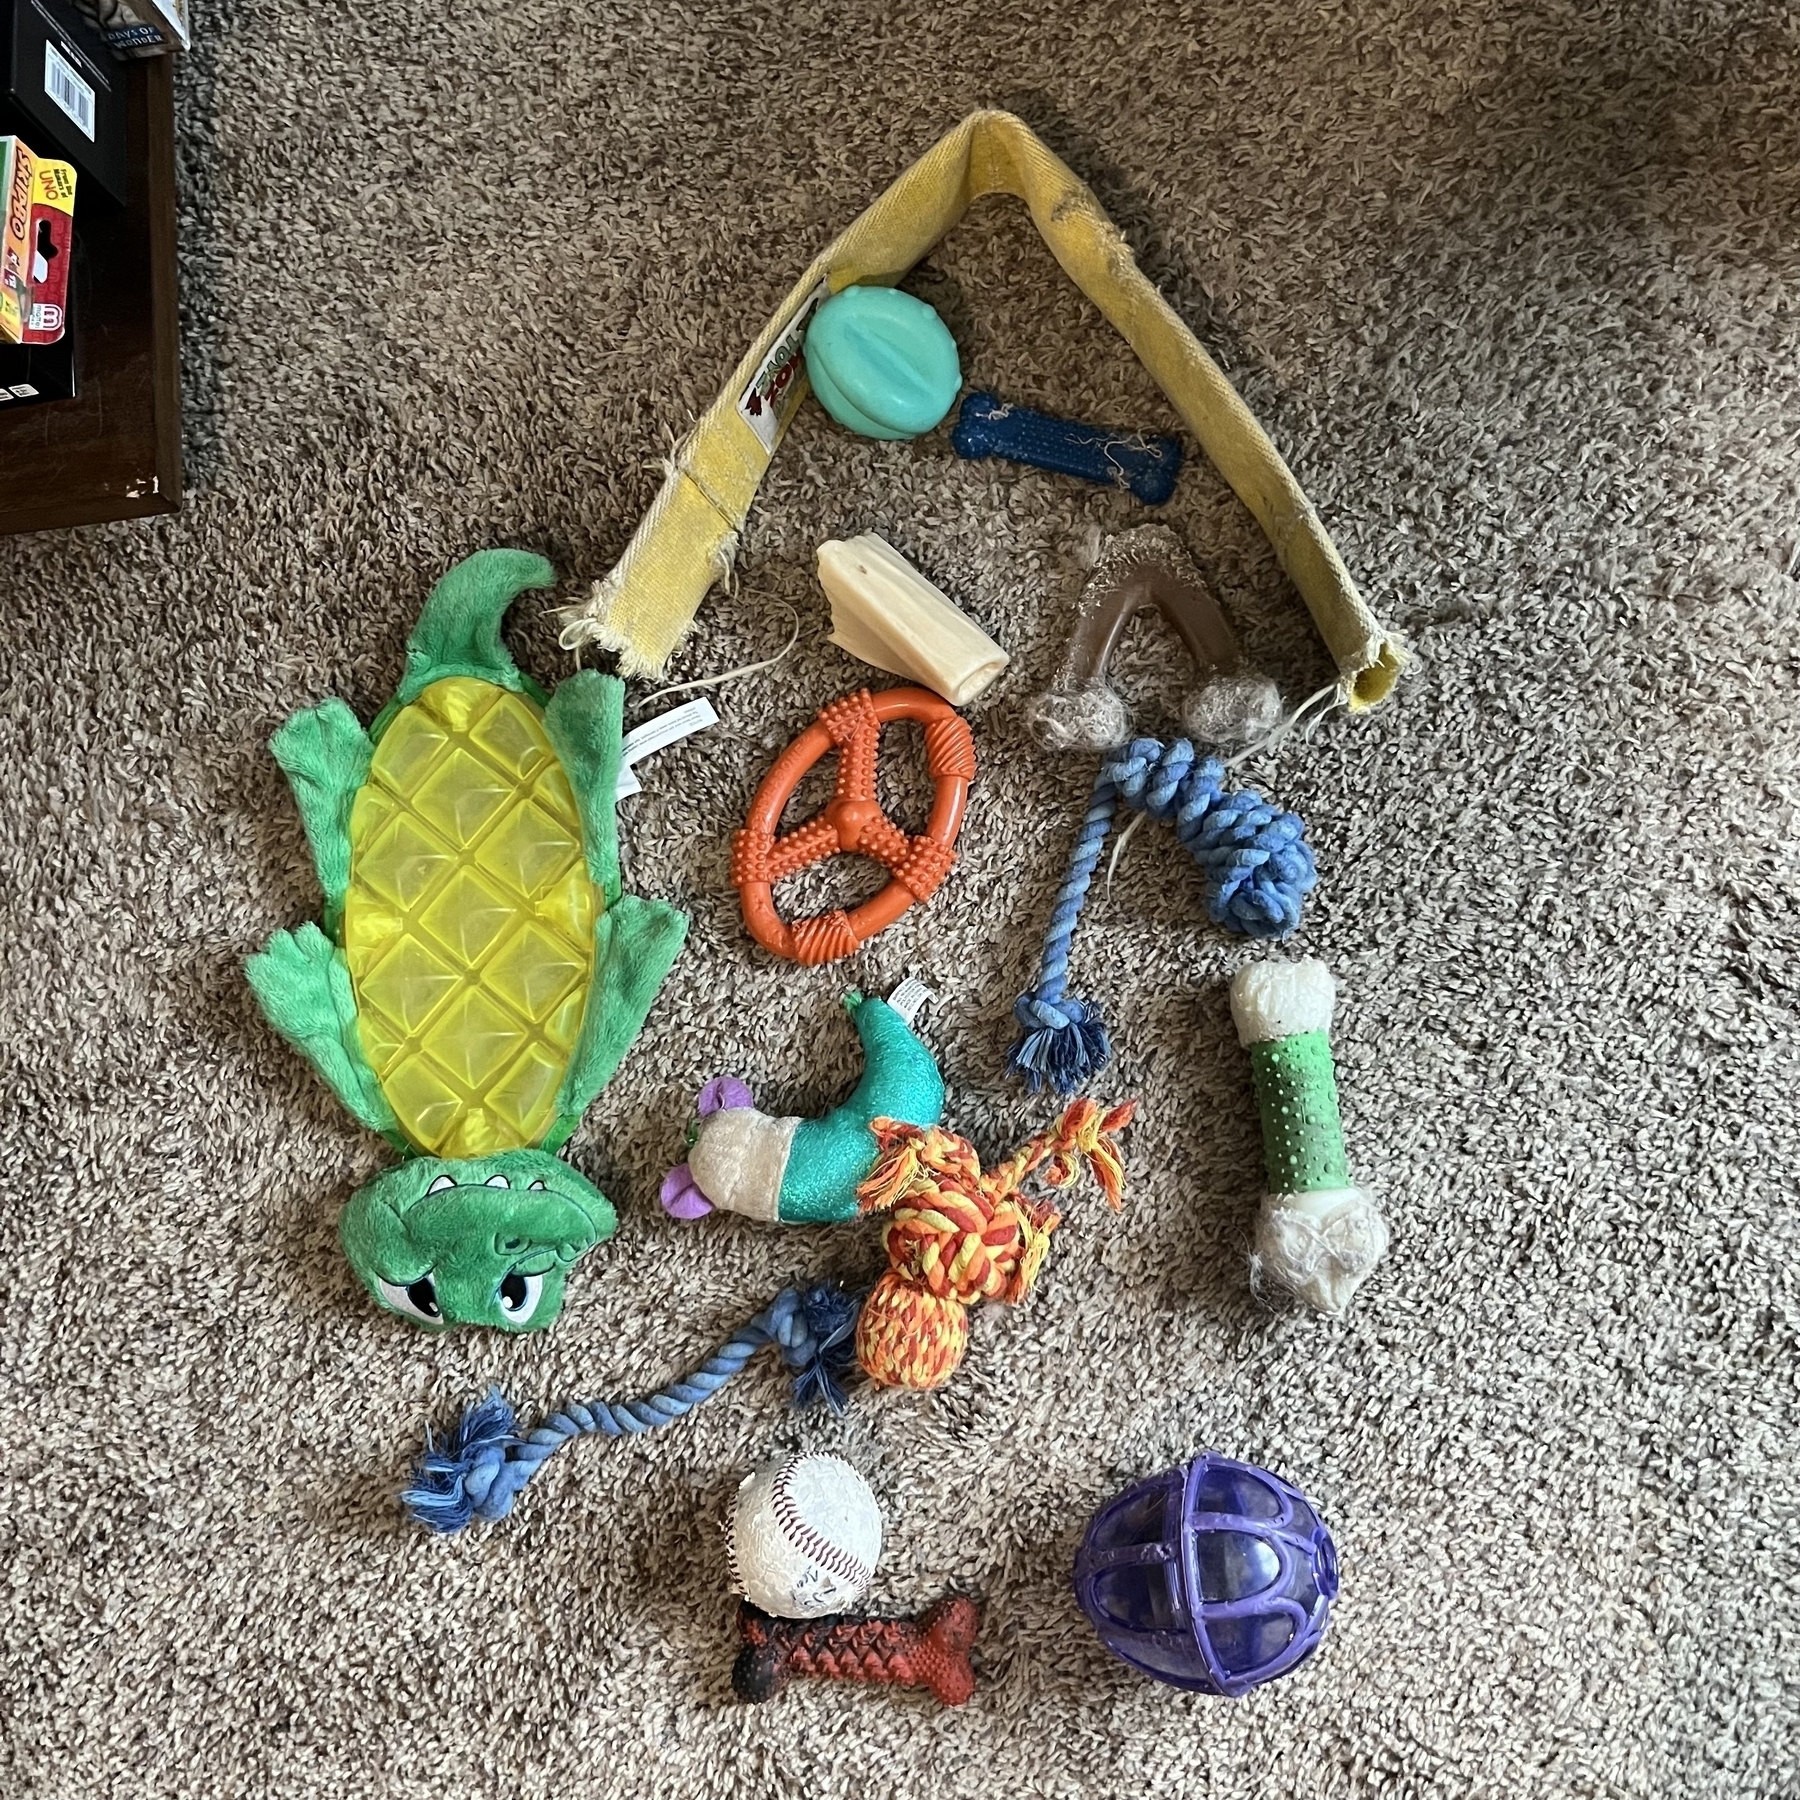 15 dog toys on the floor.